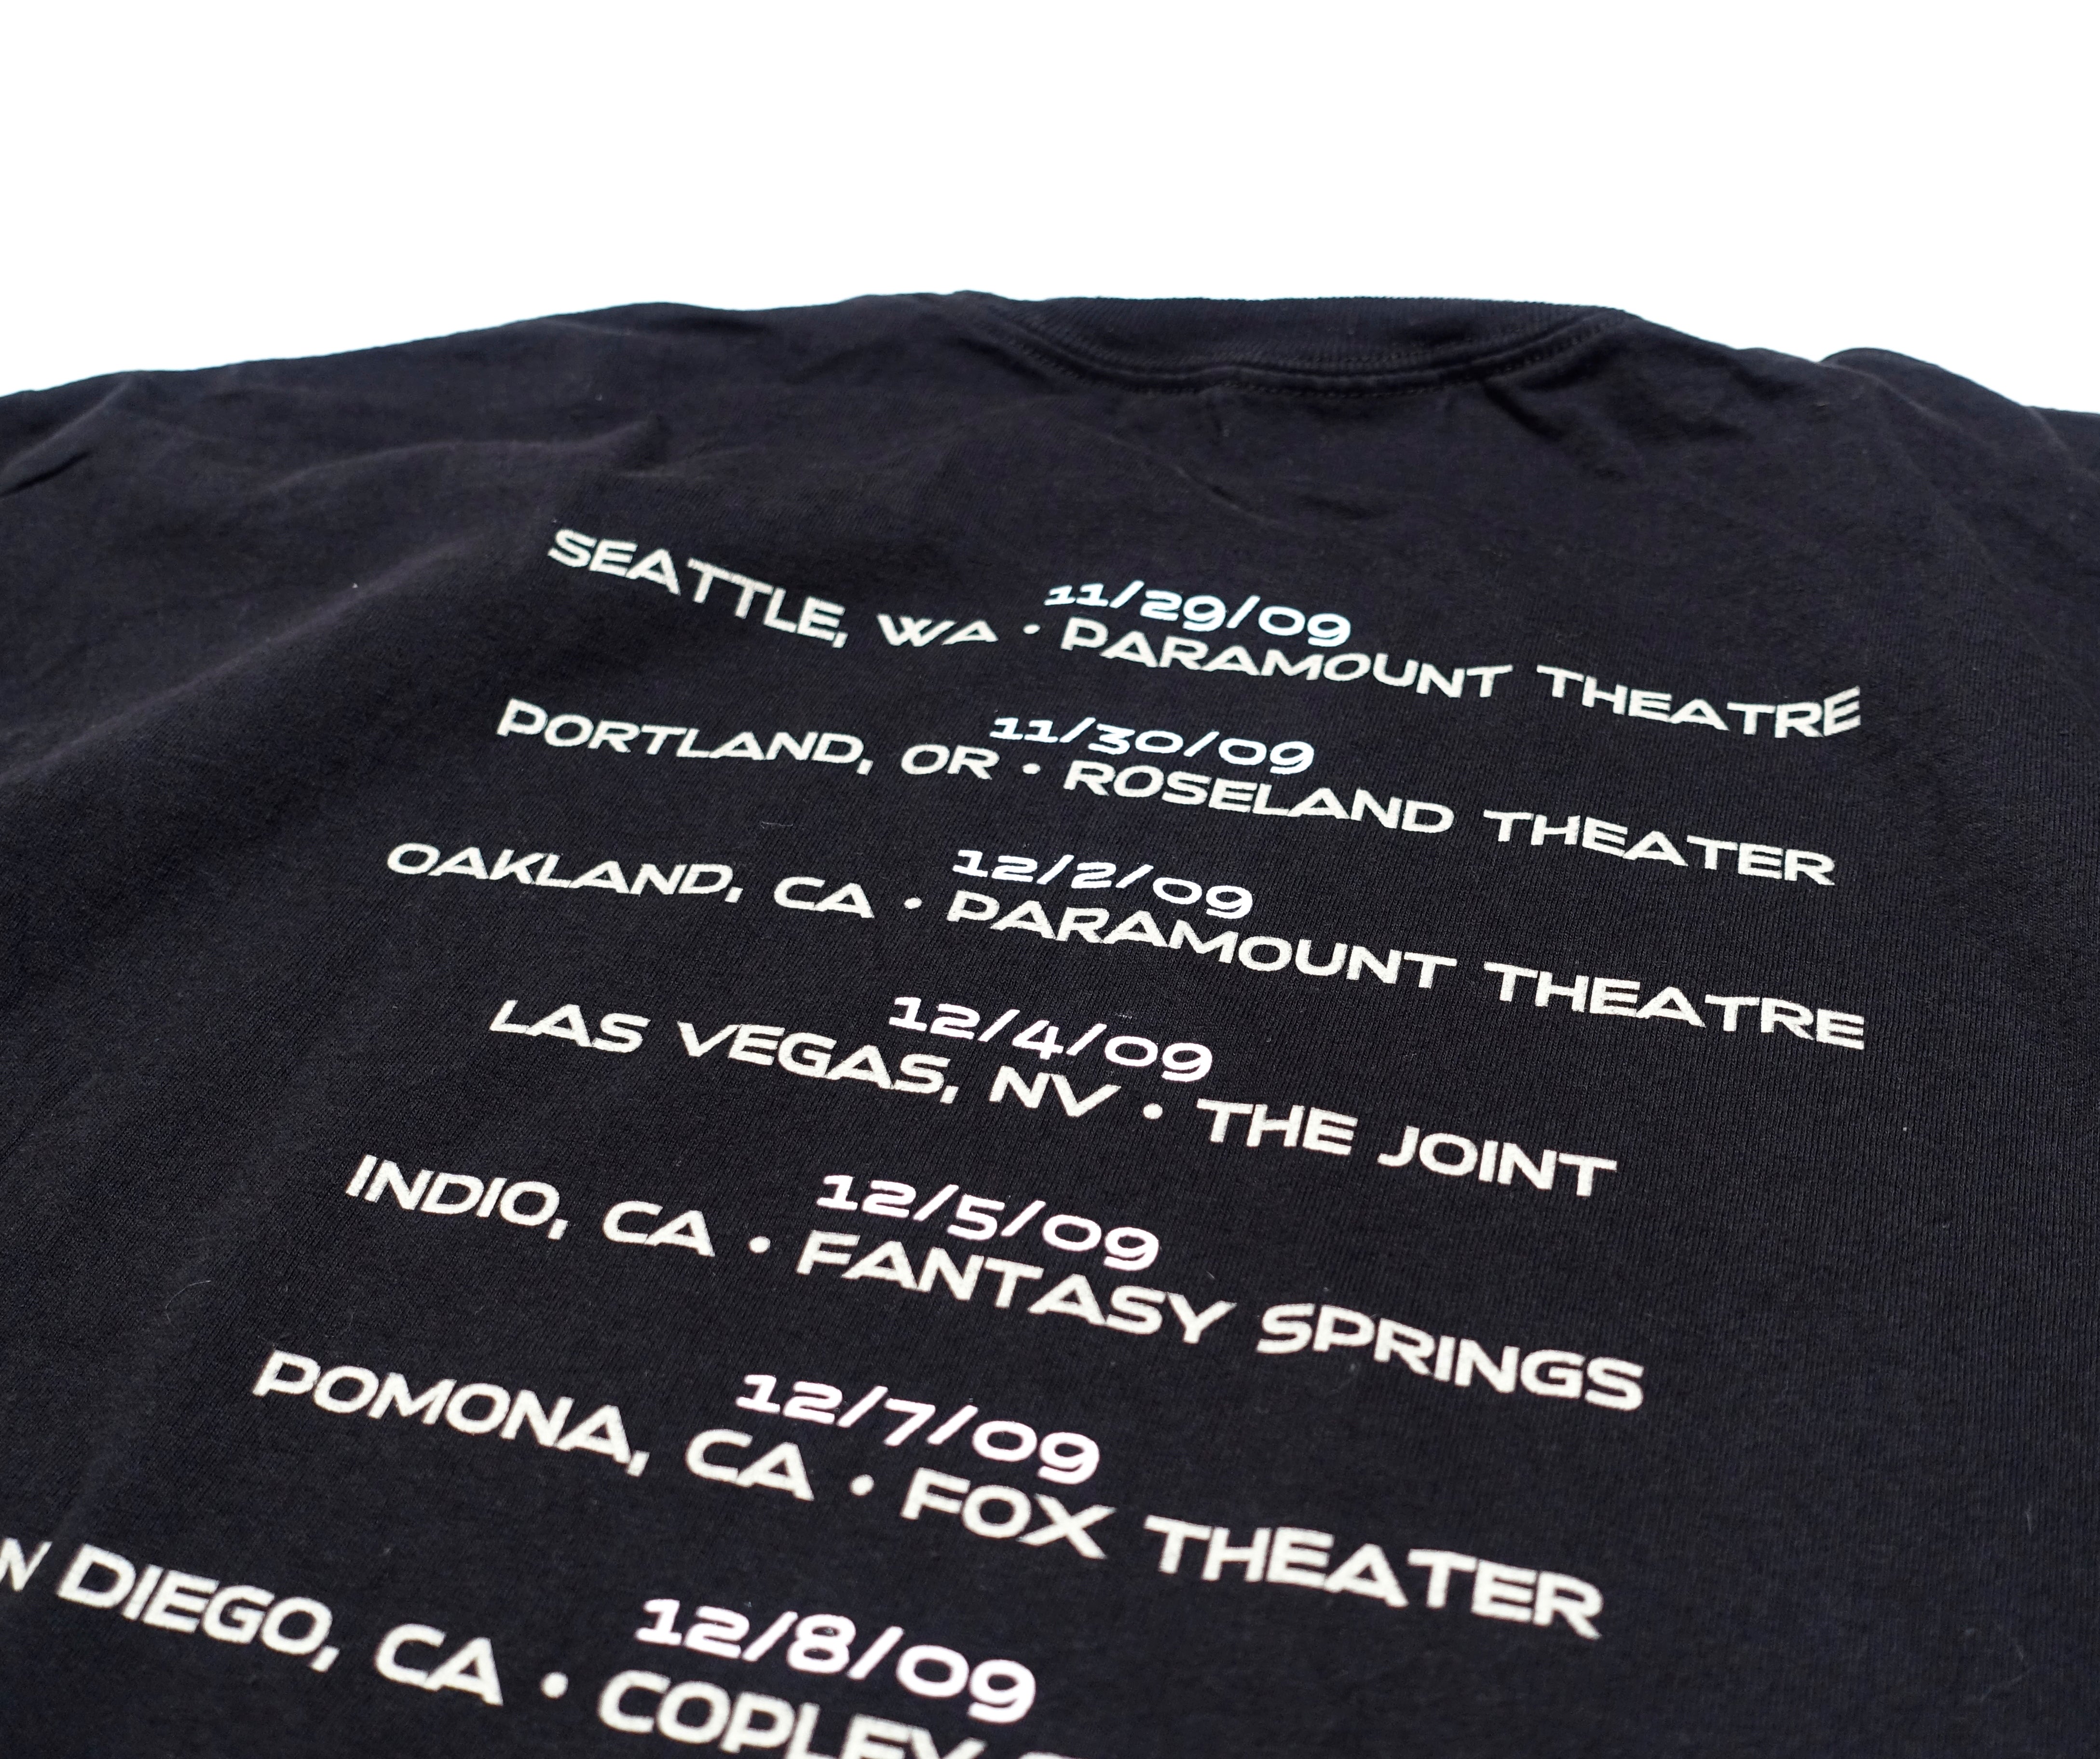 Morrissey - Swords 2009 West Coast US Tour Shirt Size XL